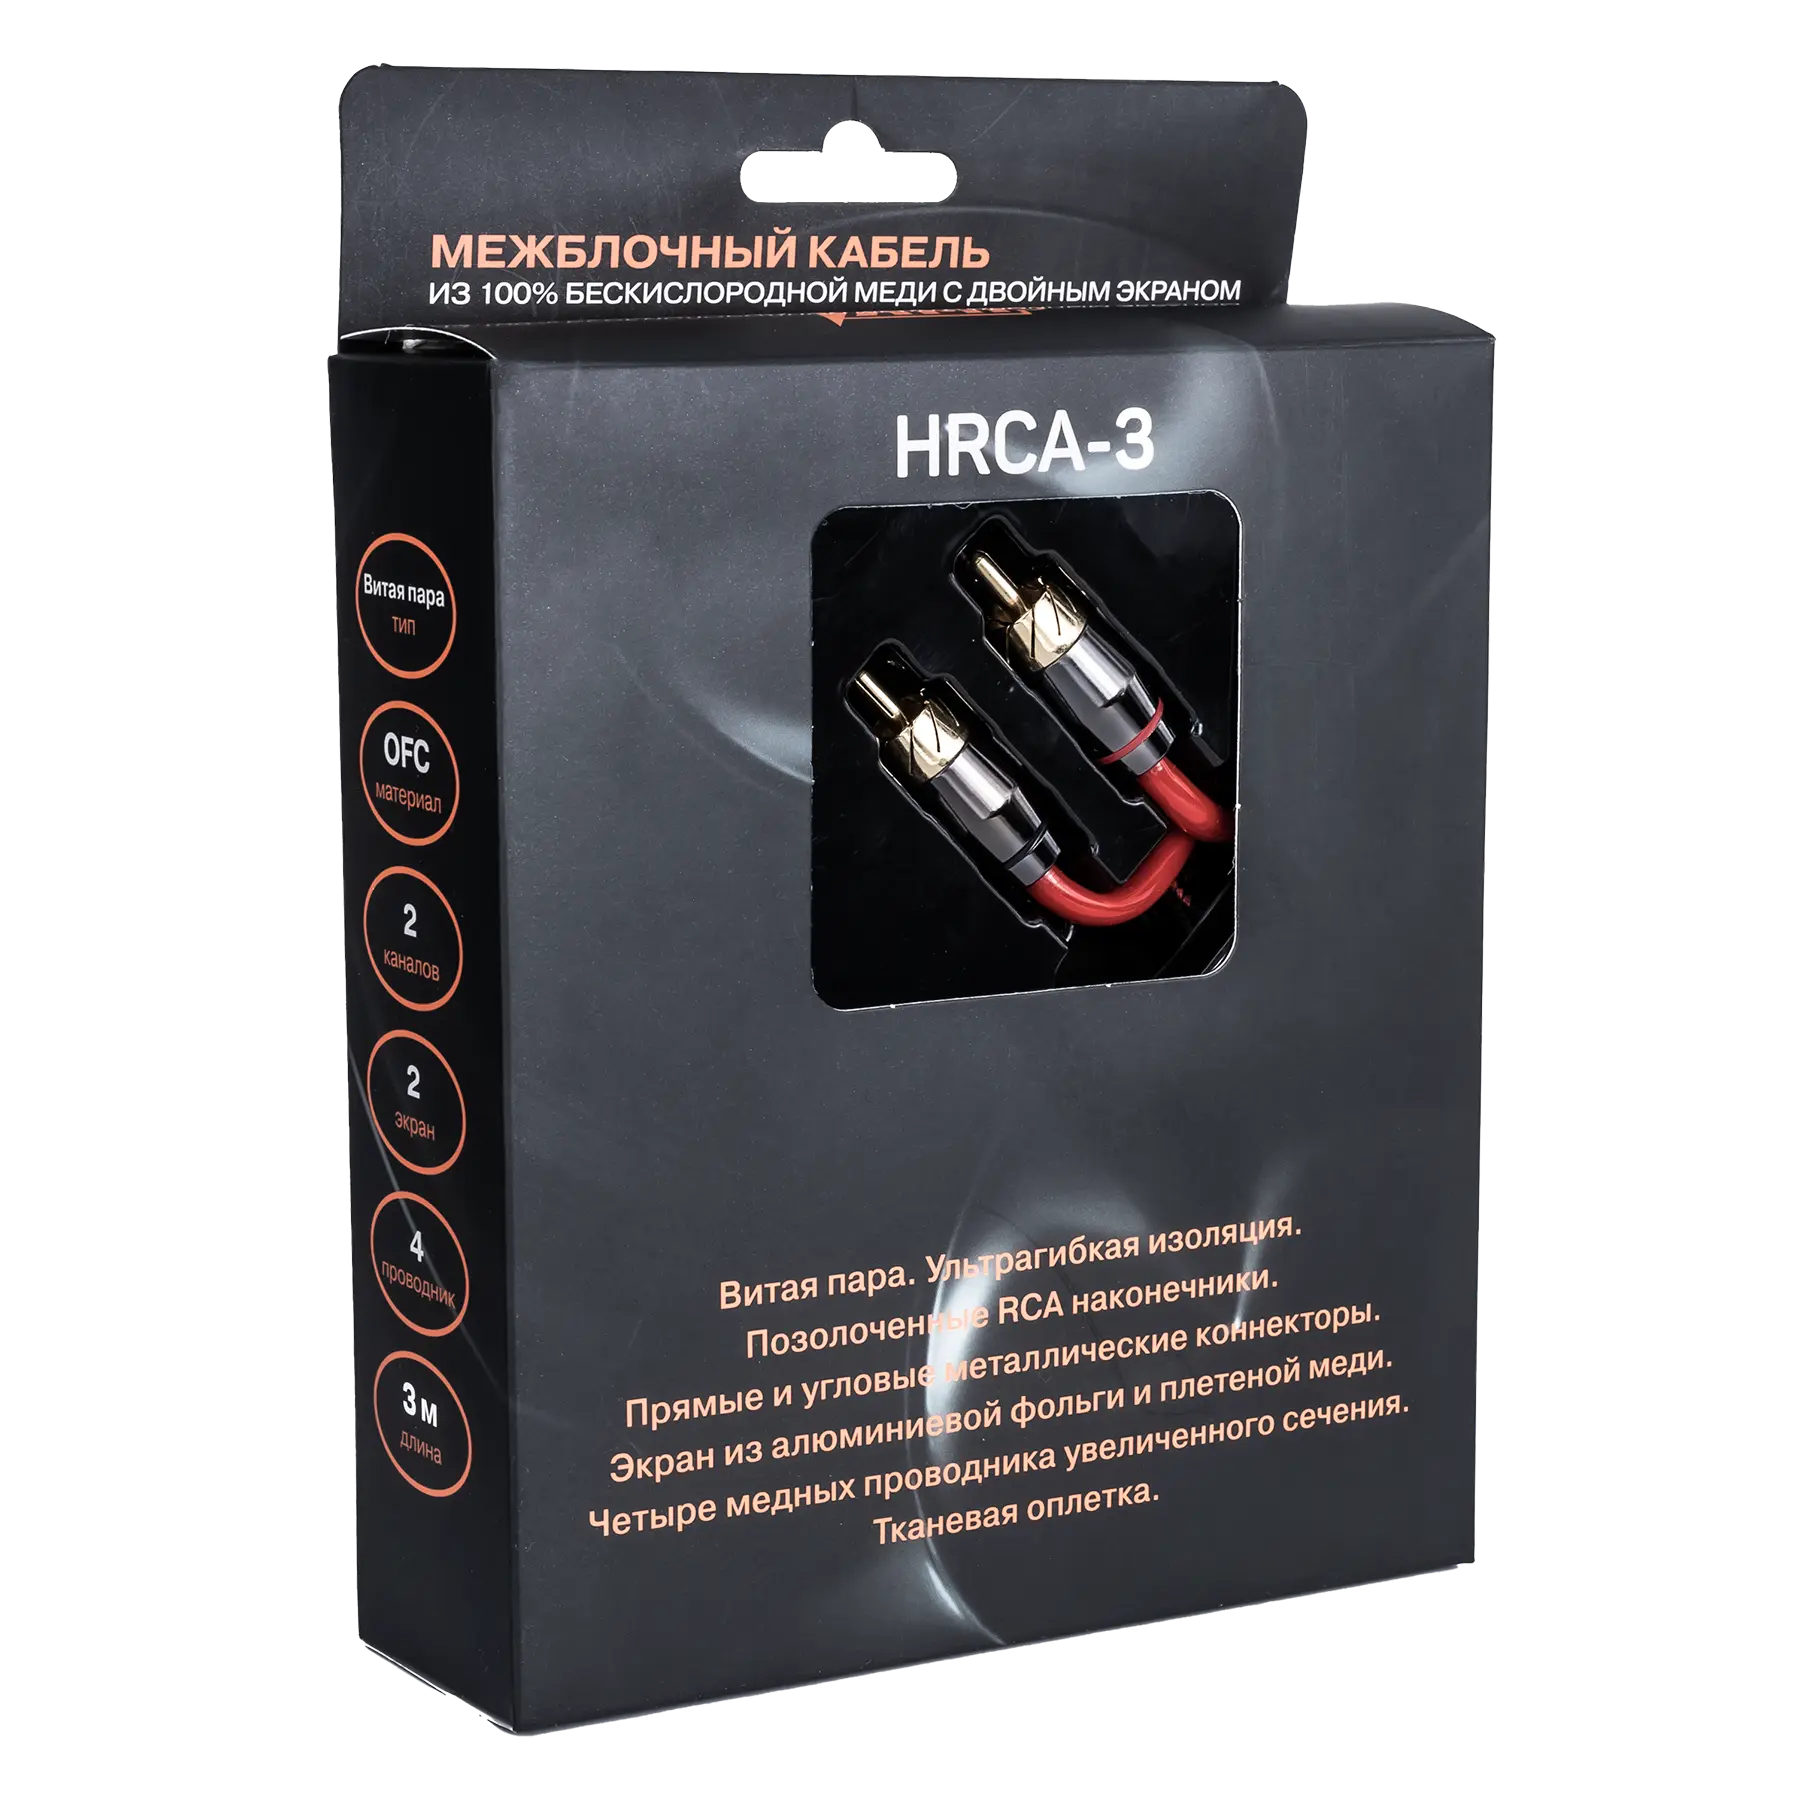 Провод соединительный AMP HRCA-3 Межблочный кабель-медь+2 экрана купить в интернет магазине AMPGROUP.  Провод соединительный AMP HRCA-3 Межблочный кабель-медь+2 экрана   цены, большой каталог, новинки.
